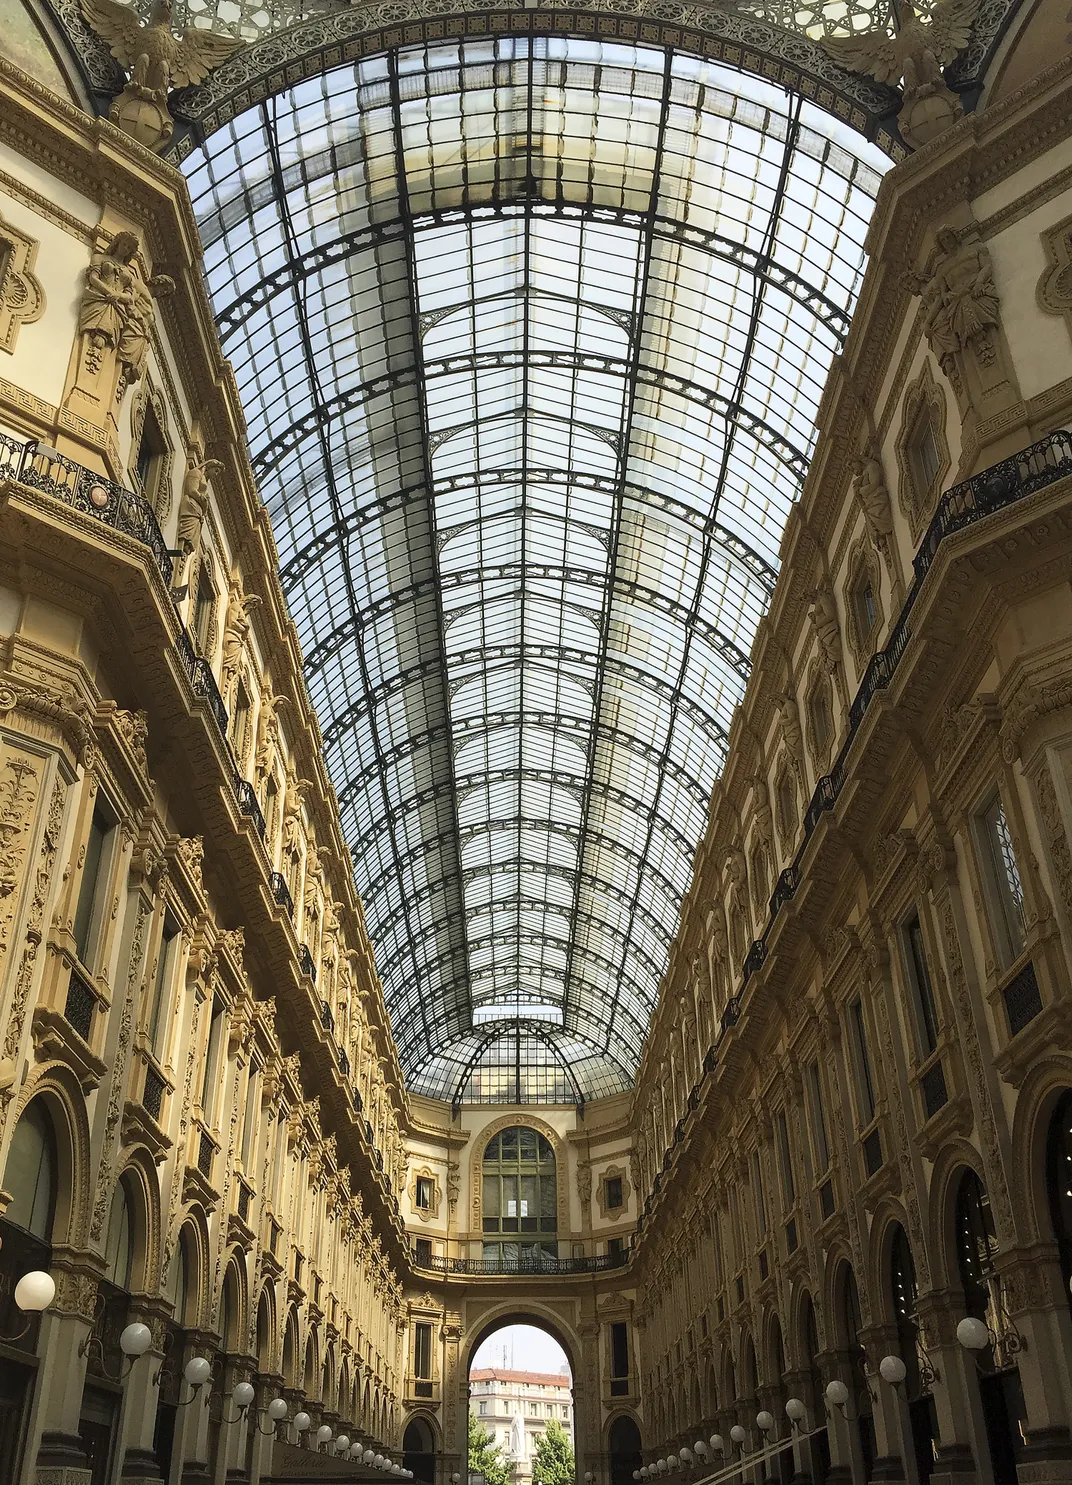 Galleria Vittorio Emanuele Info